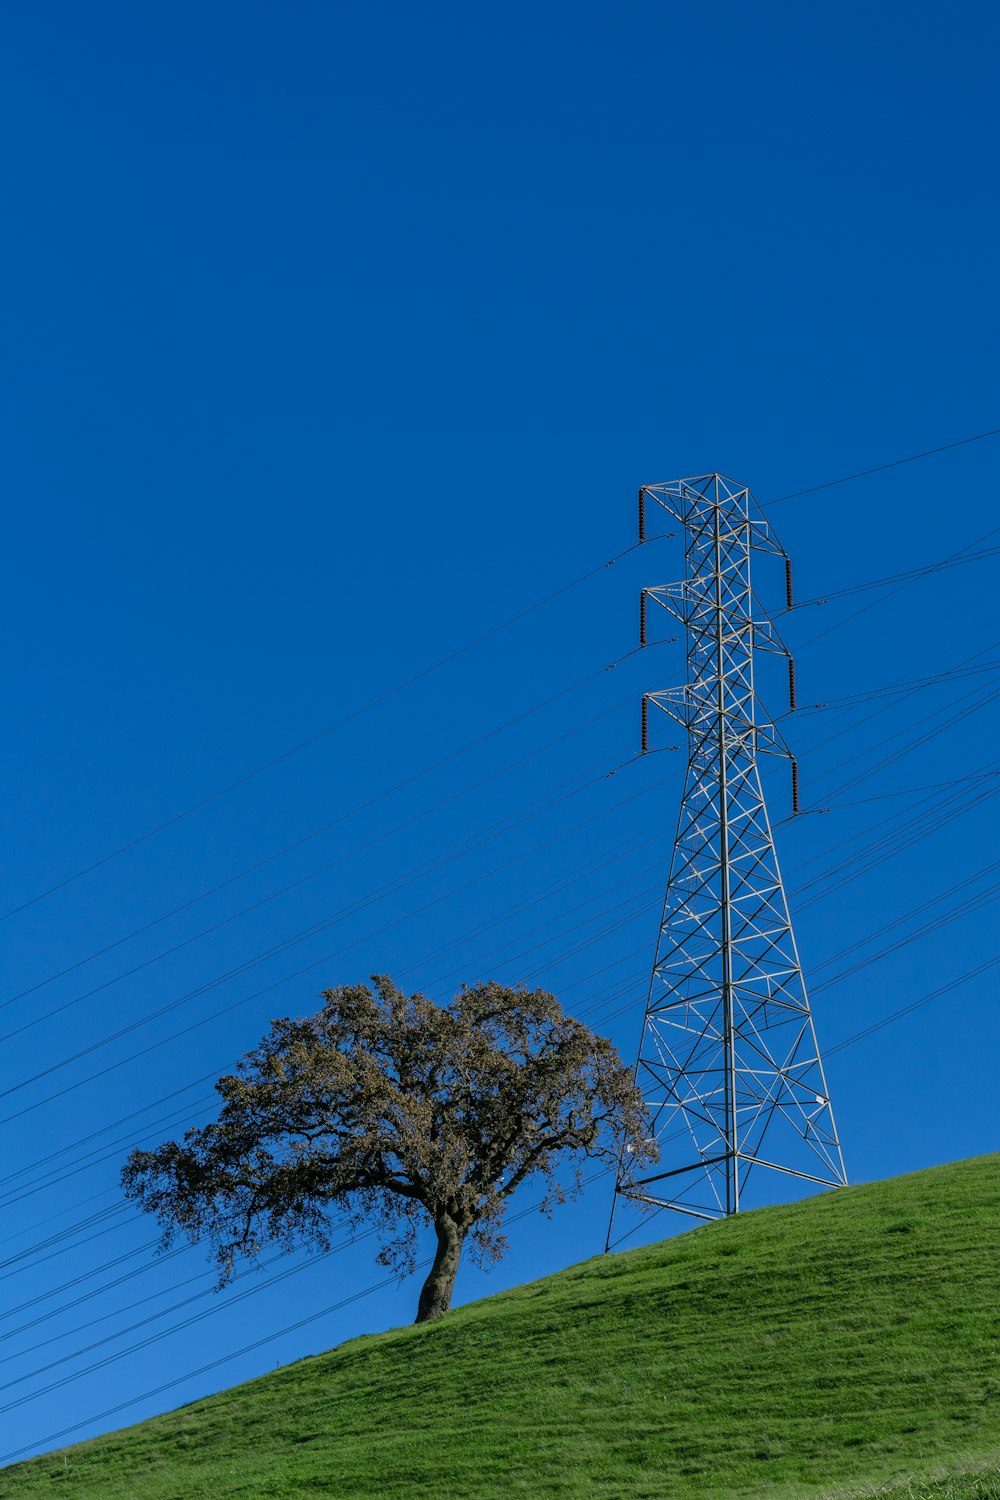 Ein einsamer Baum auf einem Hügel mit Stromleitungen im Hintergrund